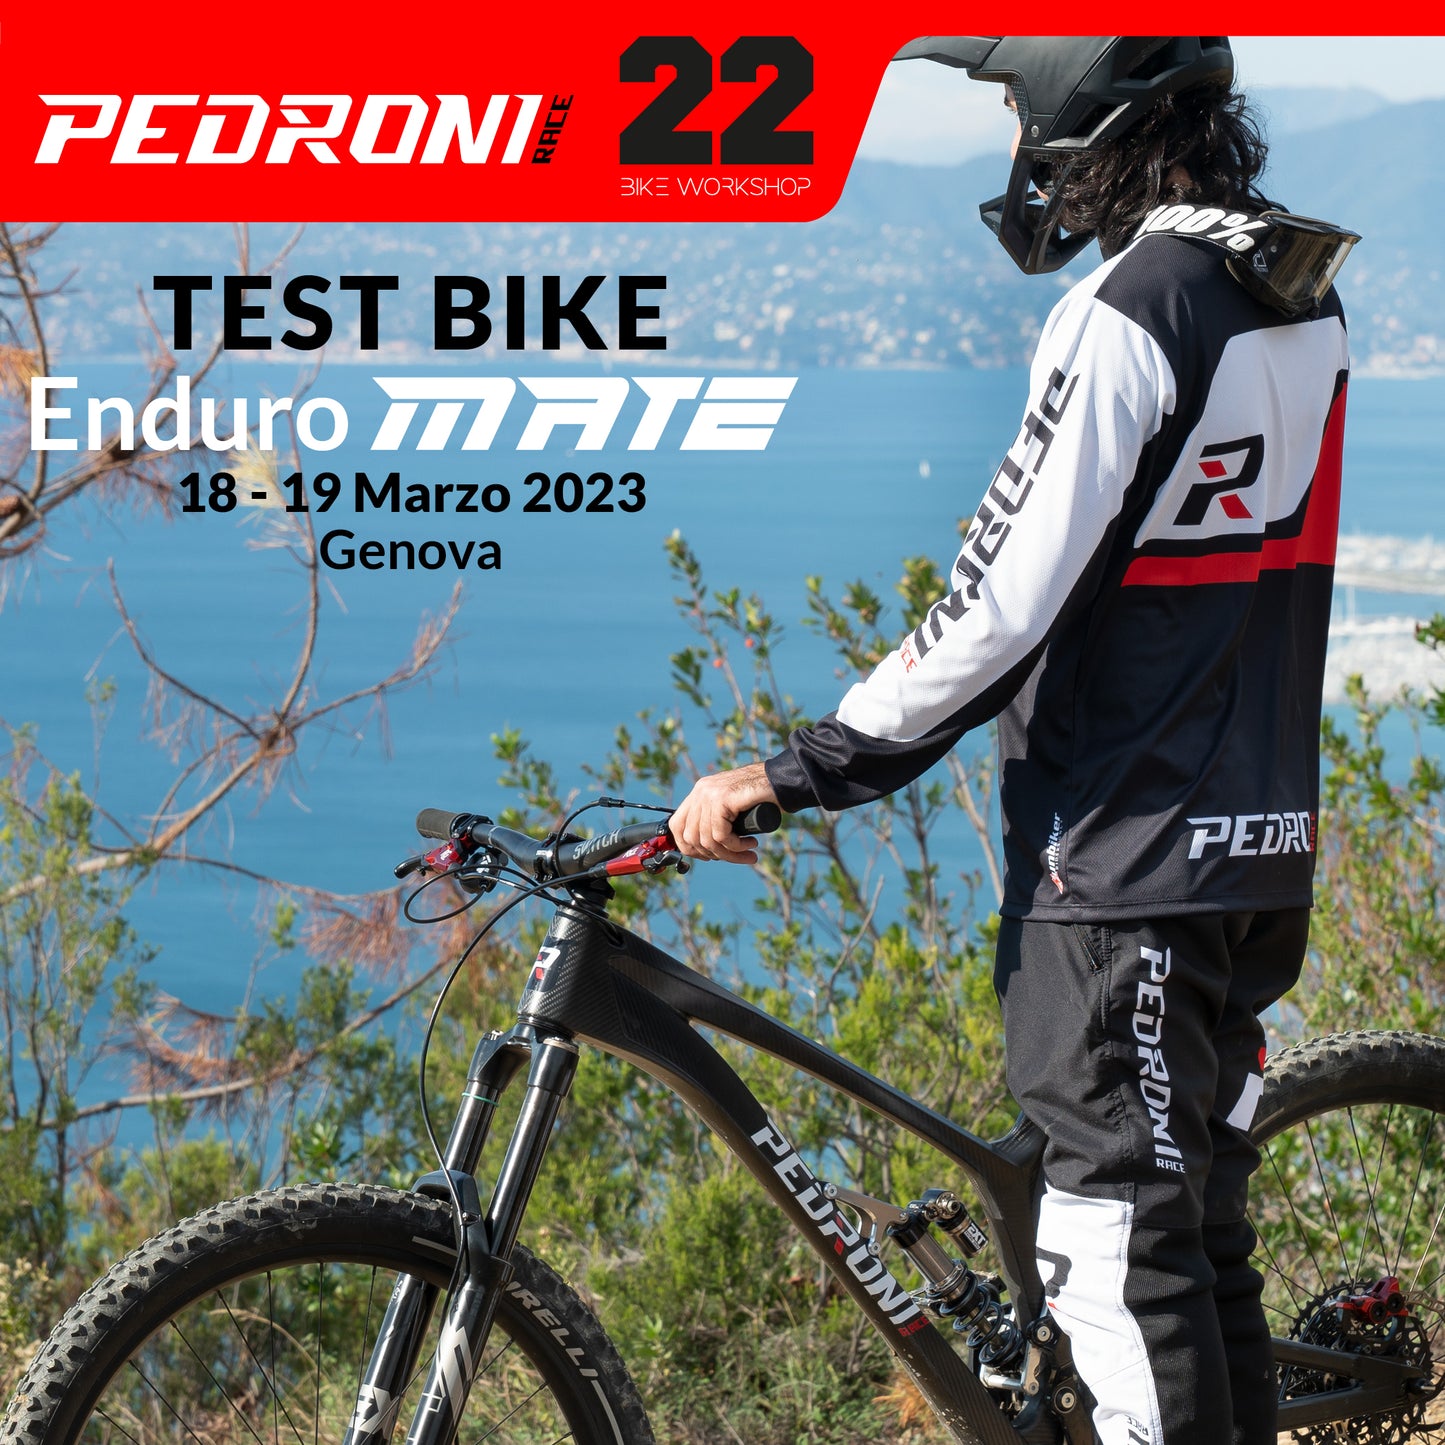 Partecipa al Bike Test dell'Enduro Mate a Genova 18-19 Marzo 2023